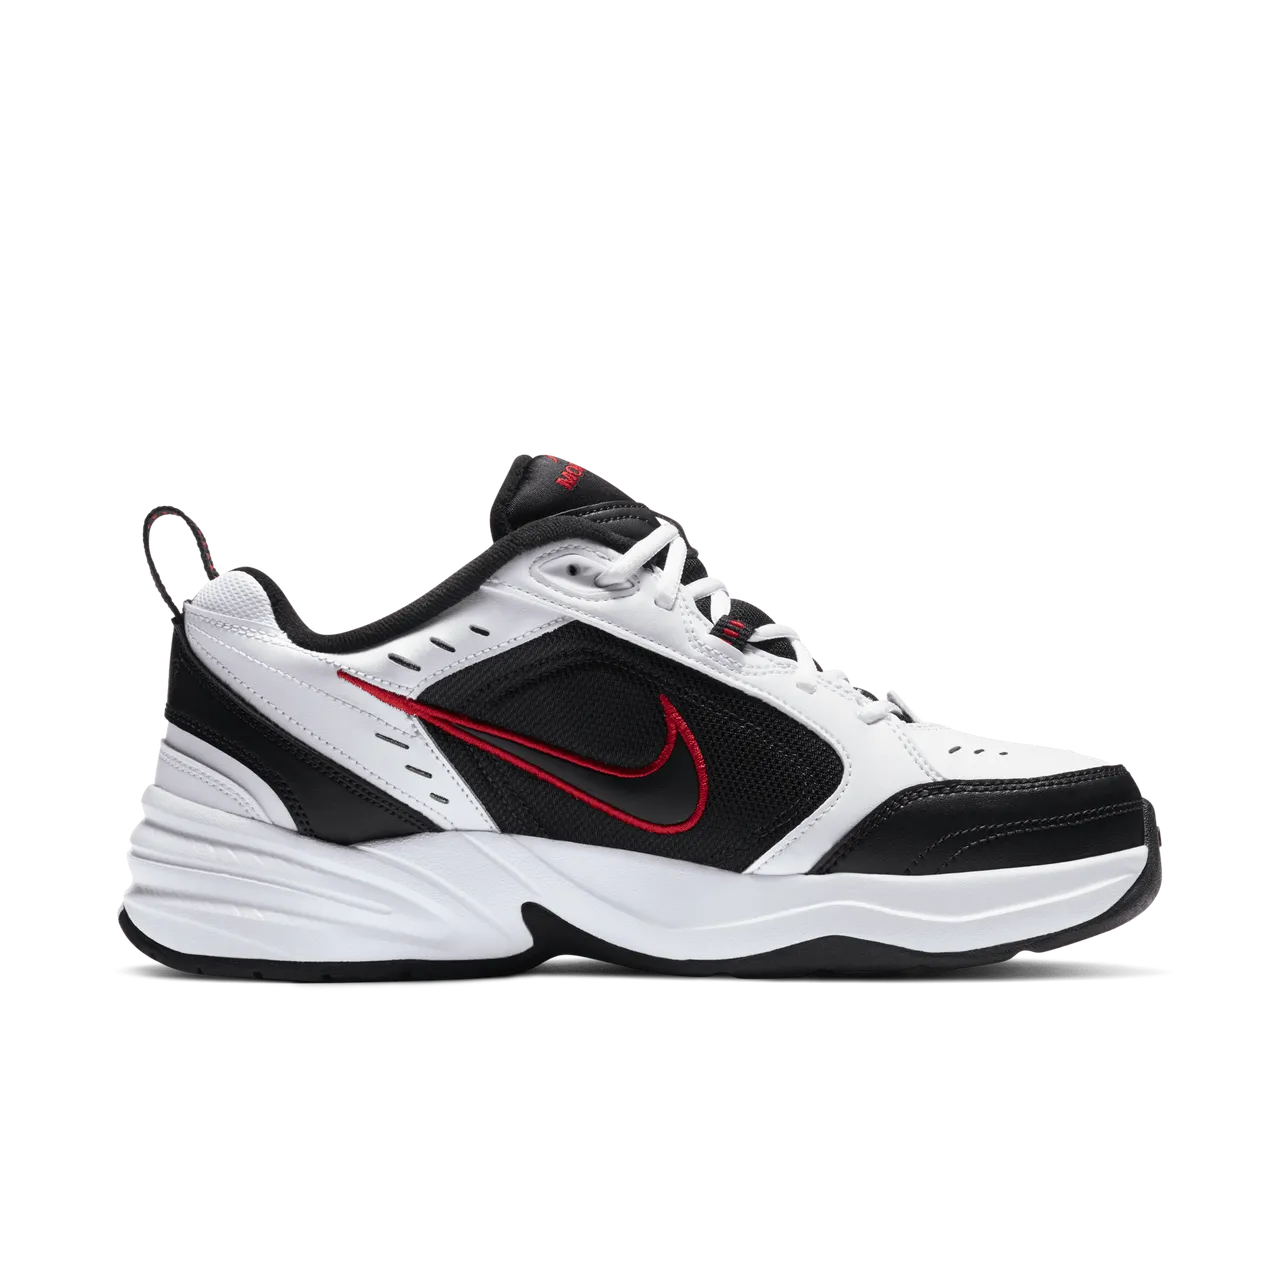 Nike Air Monarch IV Workout-Schuh für Herren - Weiß